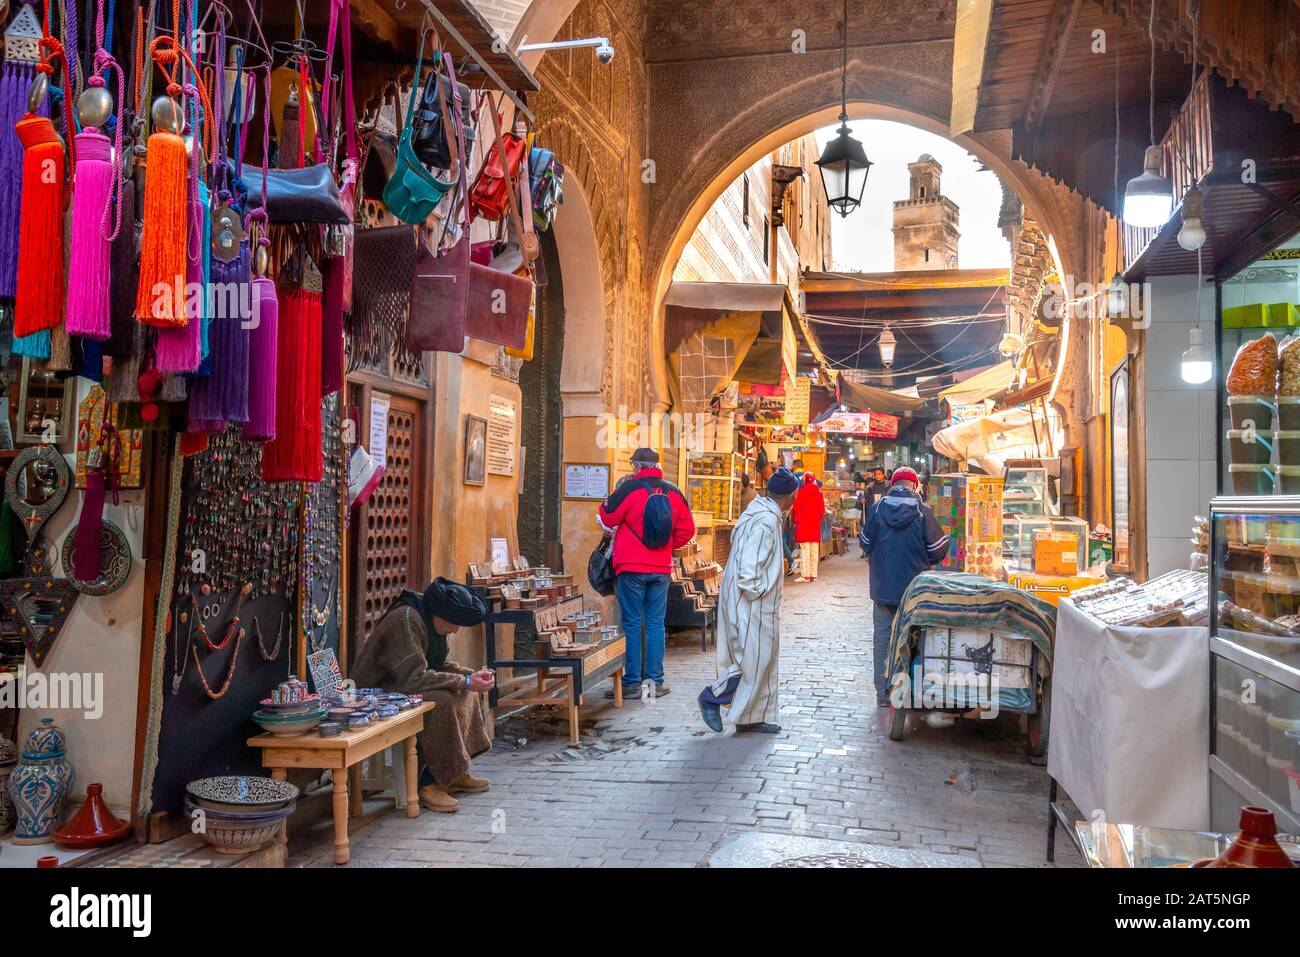 Mercato marocchino (souk) nella città vecchia (medina) di Fes, Marocco Foto Stock